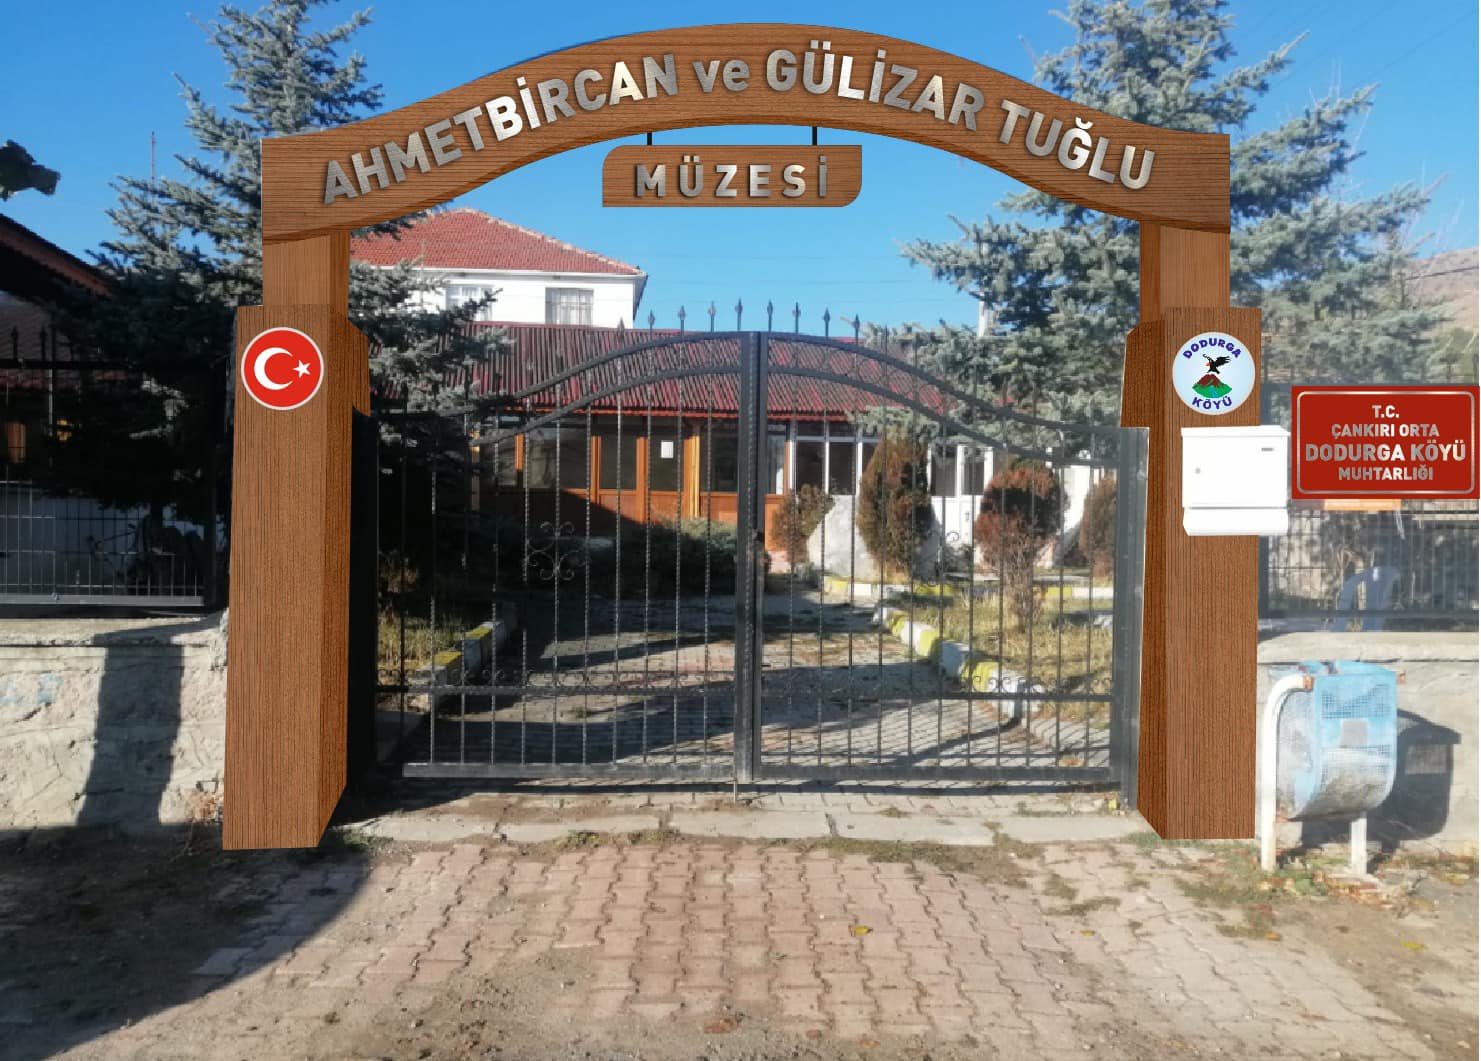 Dodurga Ahmet Bircan & Gülizar Tuğlu müzesi.